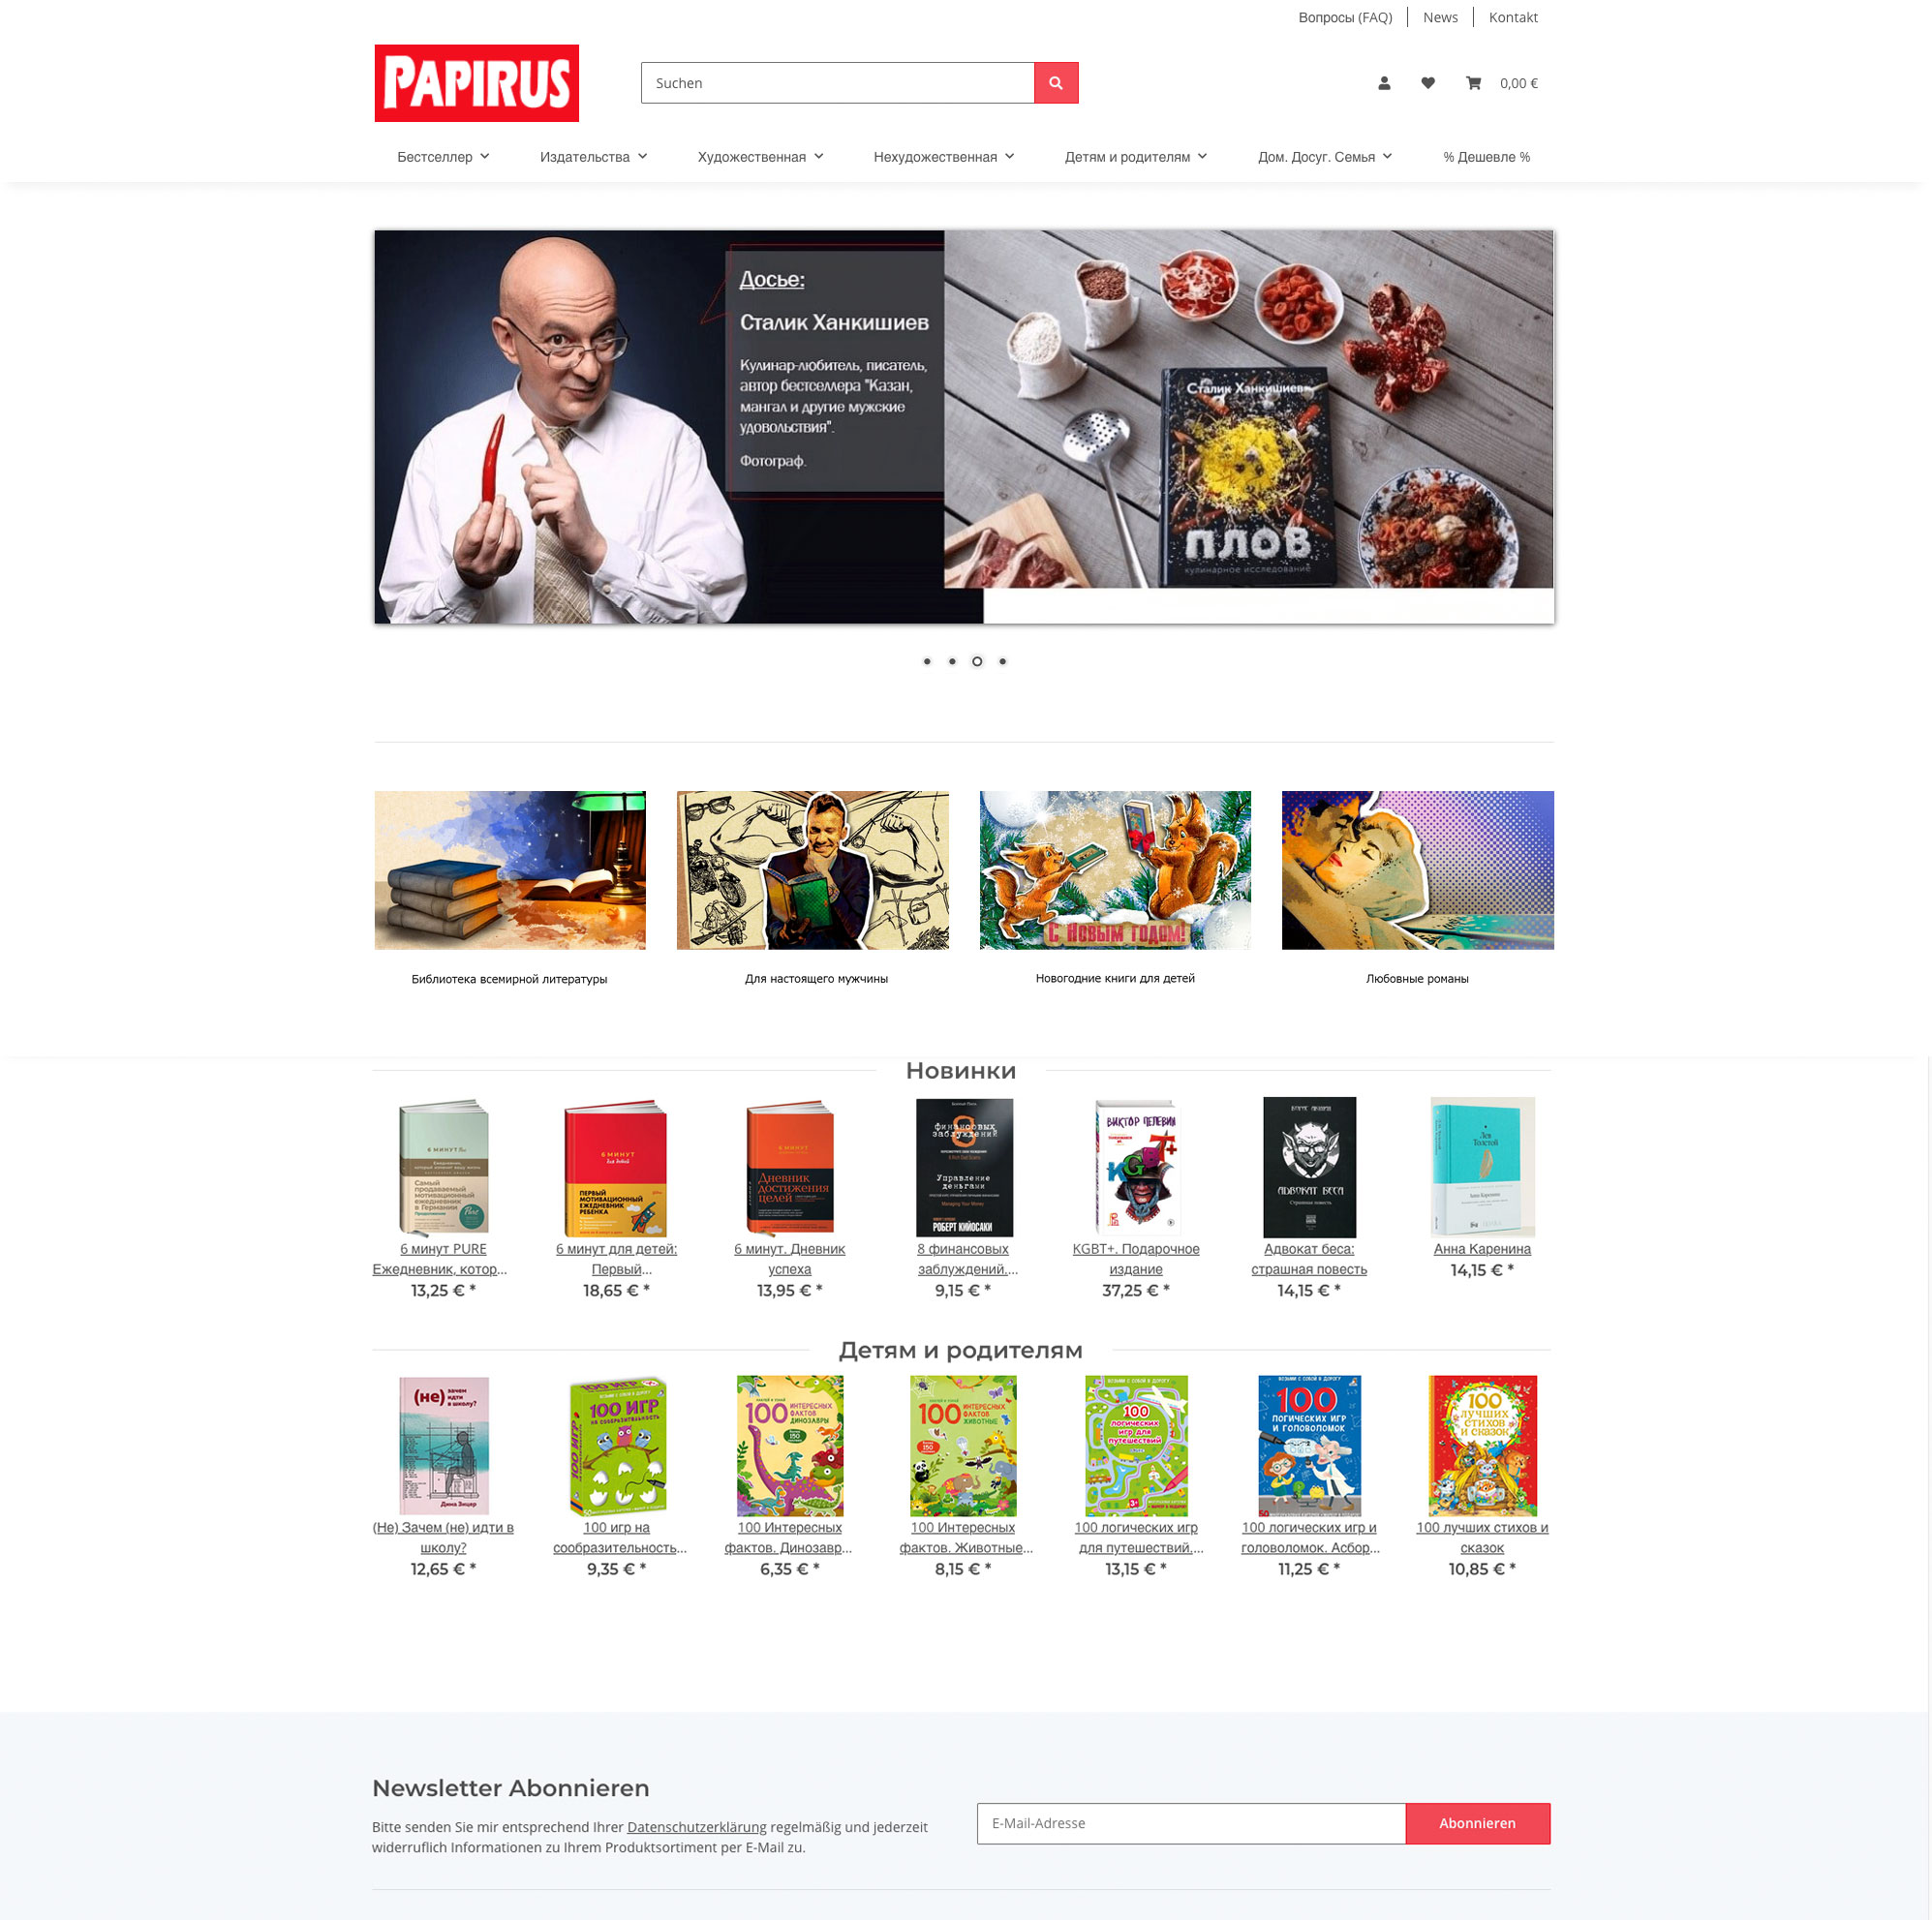 Papirus GmbH